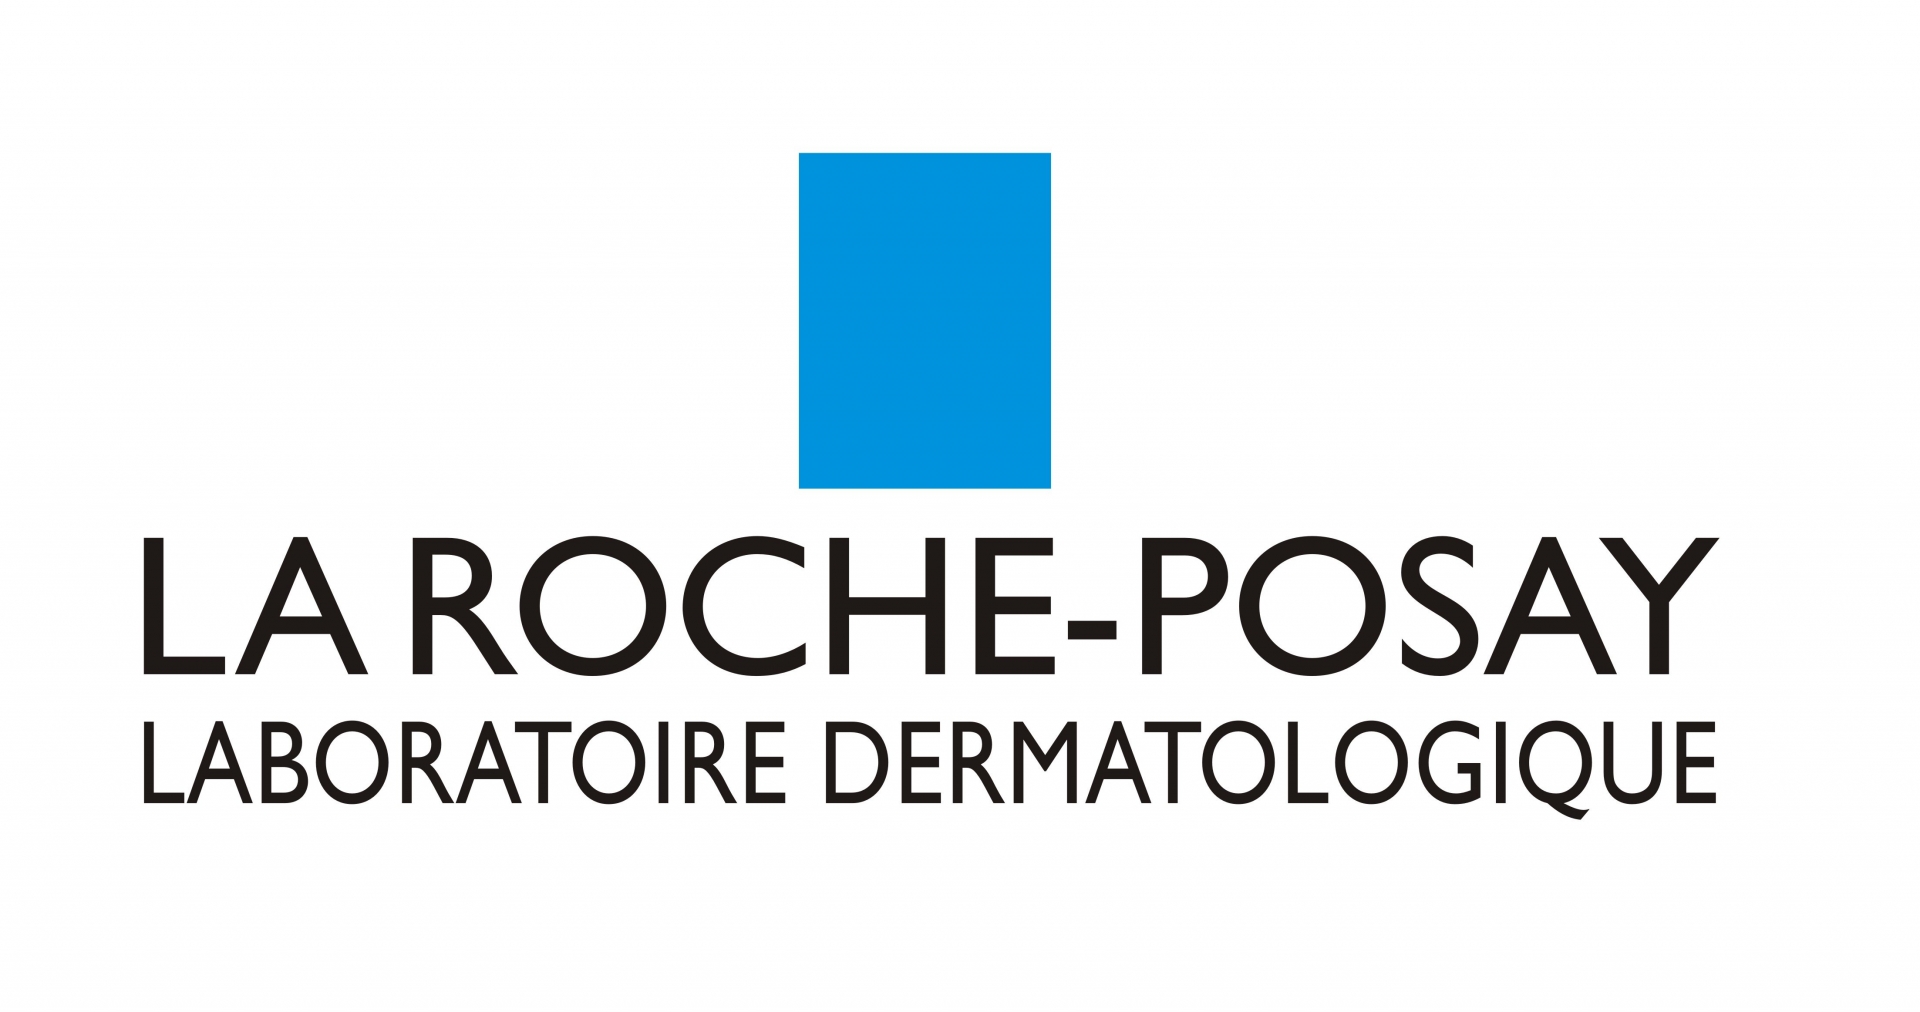 La Roche Posay là một thương hiệu dược mỹ phẩm uy tín của Pháp, nổi tiếng với các sản phẩm có độ lành tính cao như nước tẩy trang, sữa rửa mặt, serum, kem dưỡng ẩm, kem chống nắng...